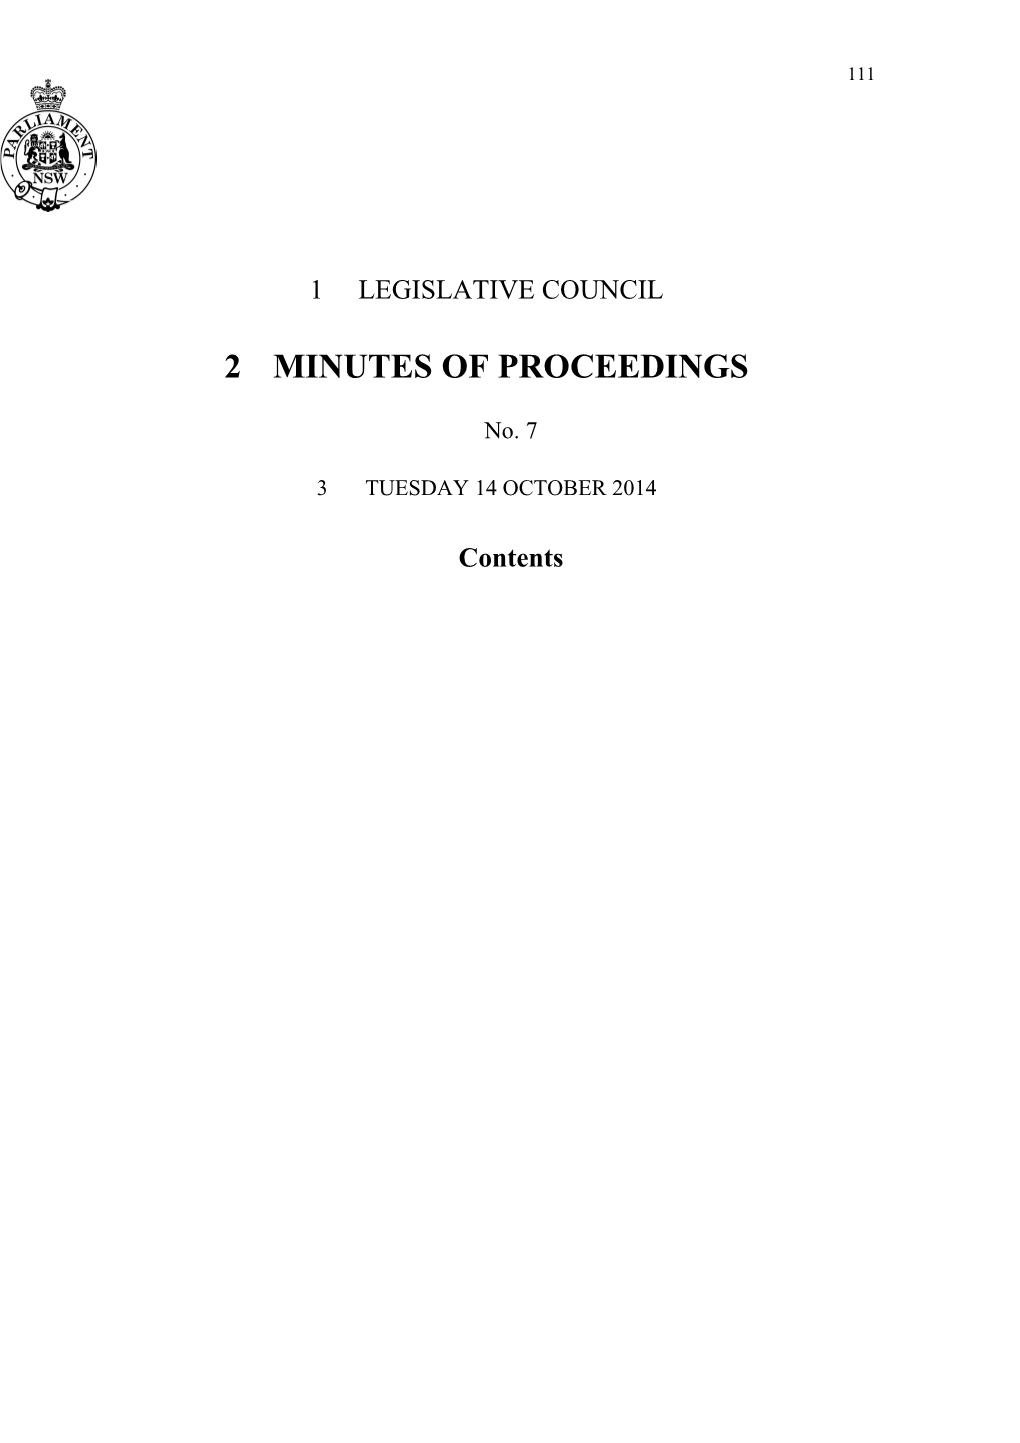 Legislative Council Minutes No. 7 Tuesday 14 October 2014